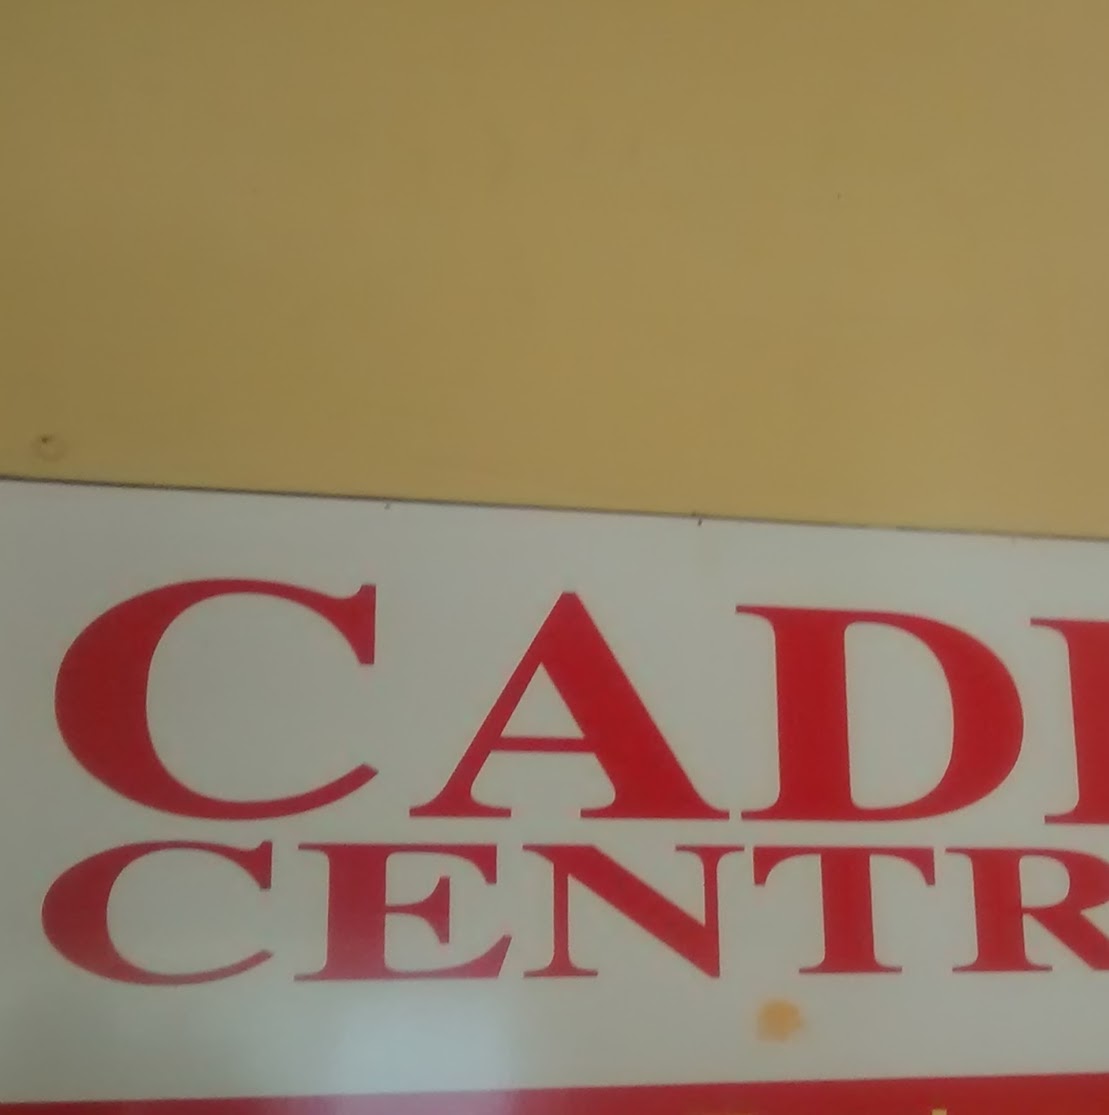 CADD Centre in Tirunelveli Junction,Tirunelveli - Best 2D Animation  Training Institutes in Tirunelveli - Justdial